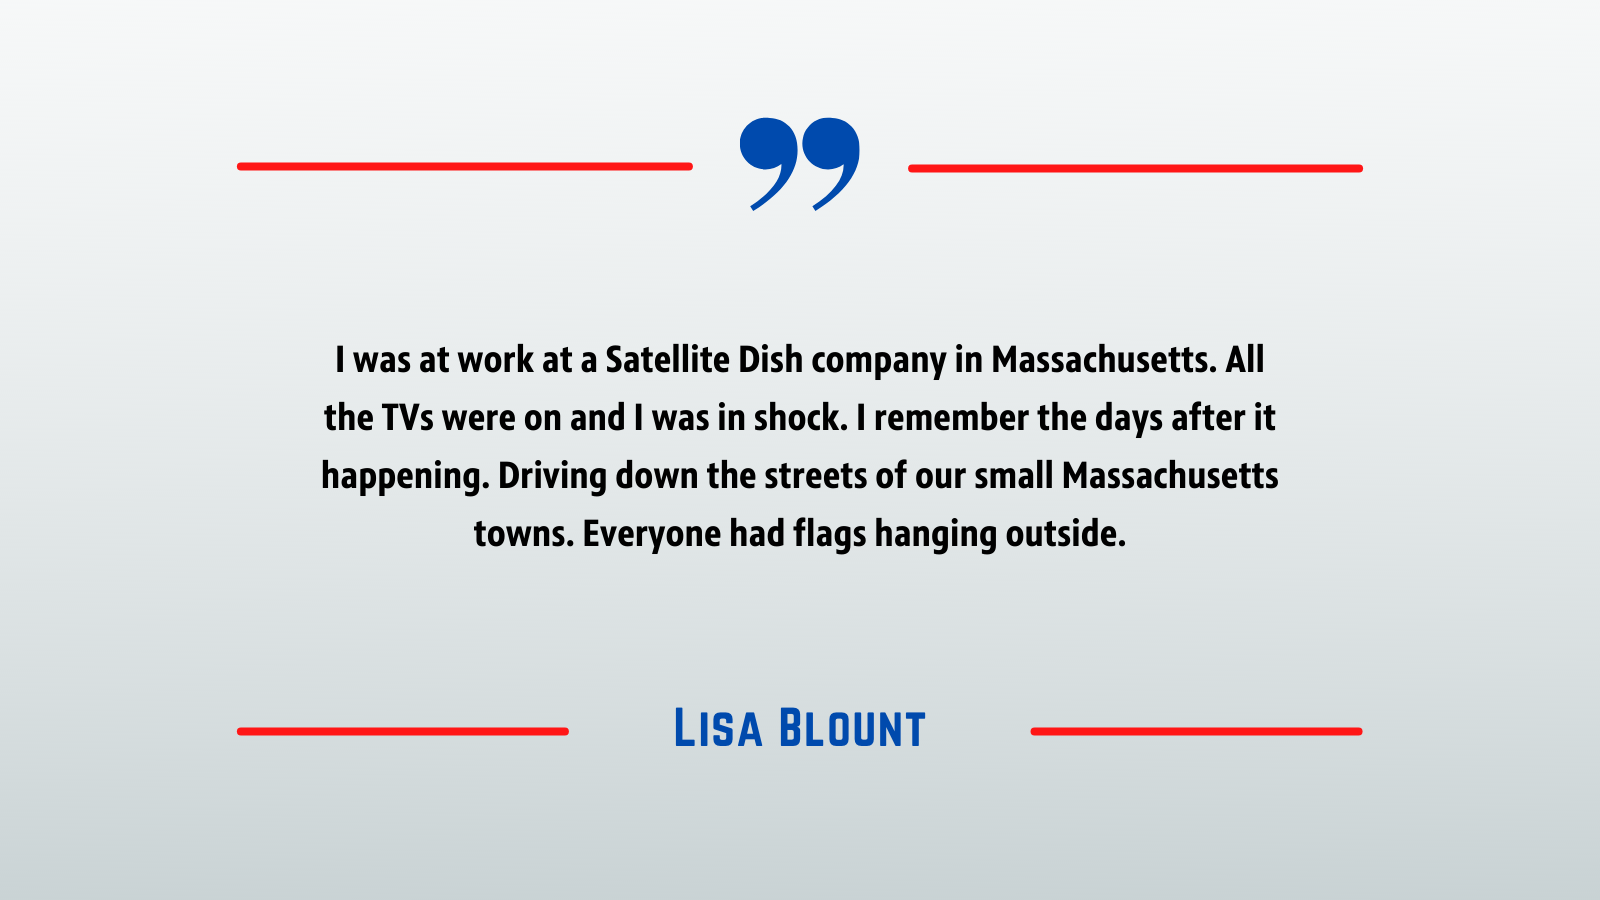 September 11 - Lisa Blount